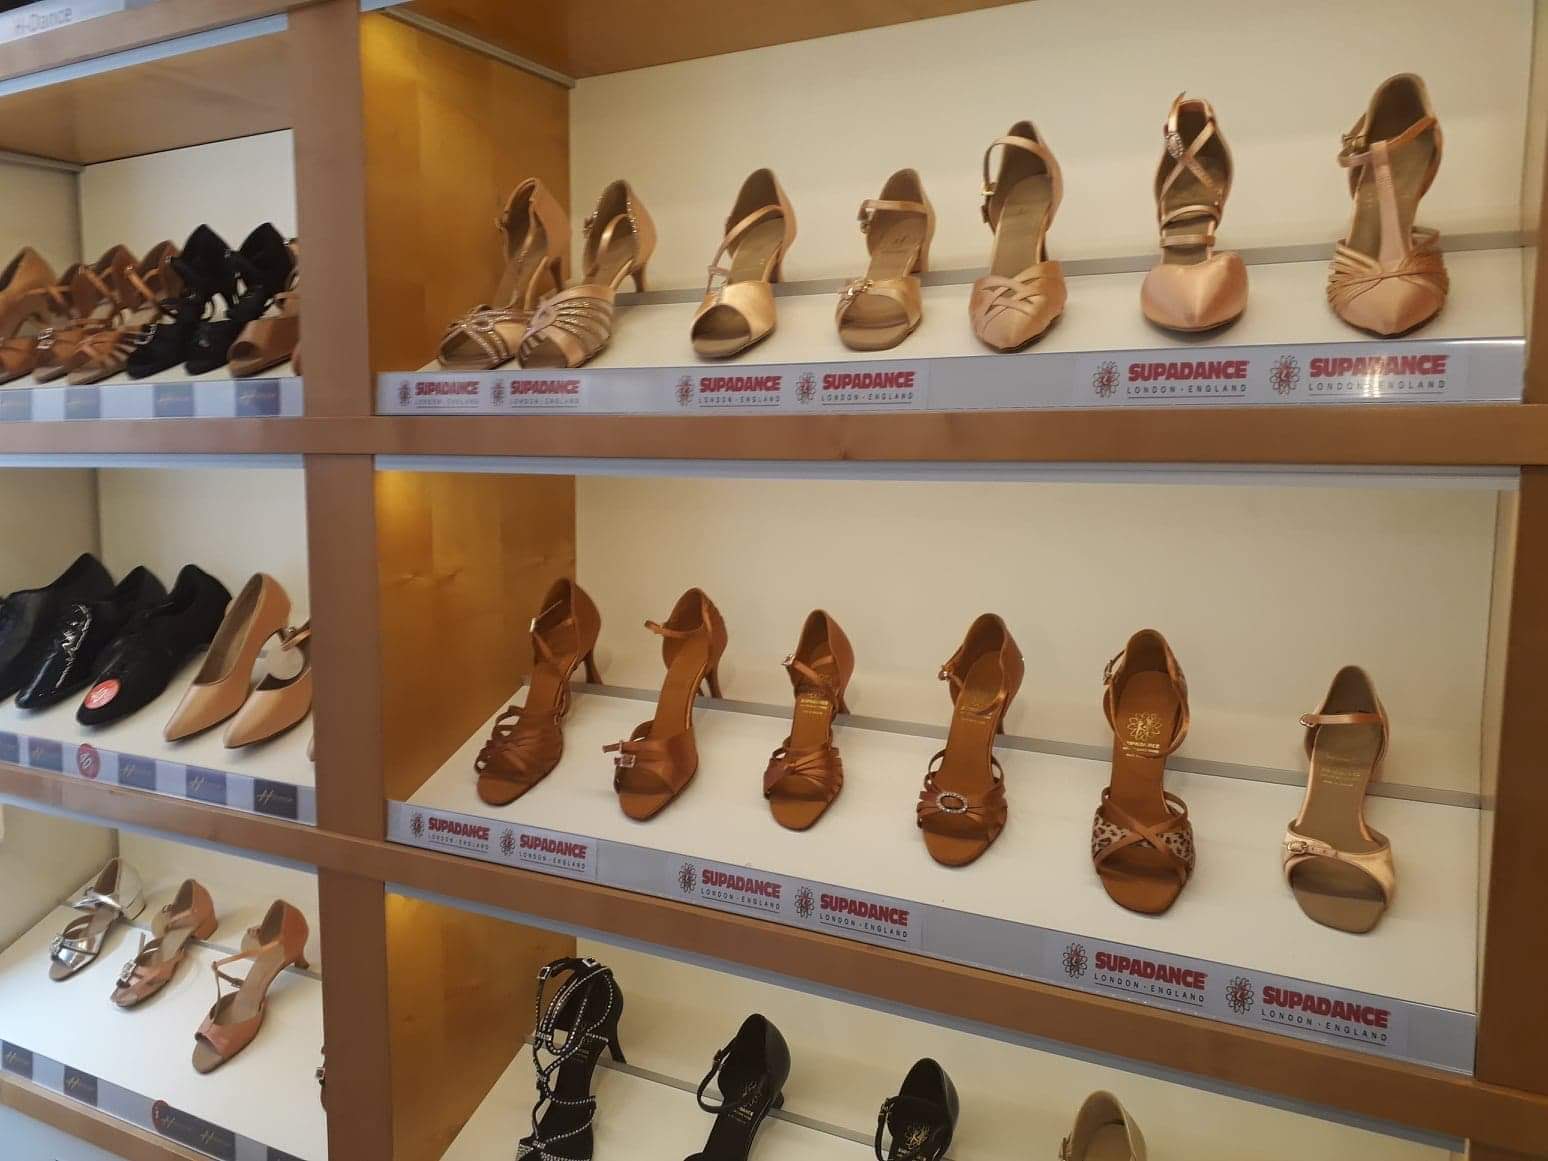 Lehké a pohodlné taneční boty Praha prodej - odlehčí vaše nohy